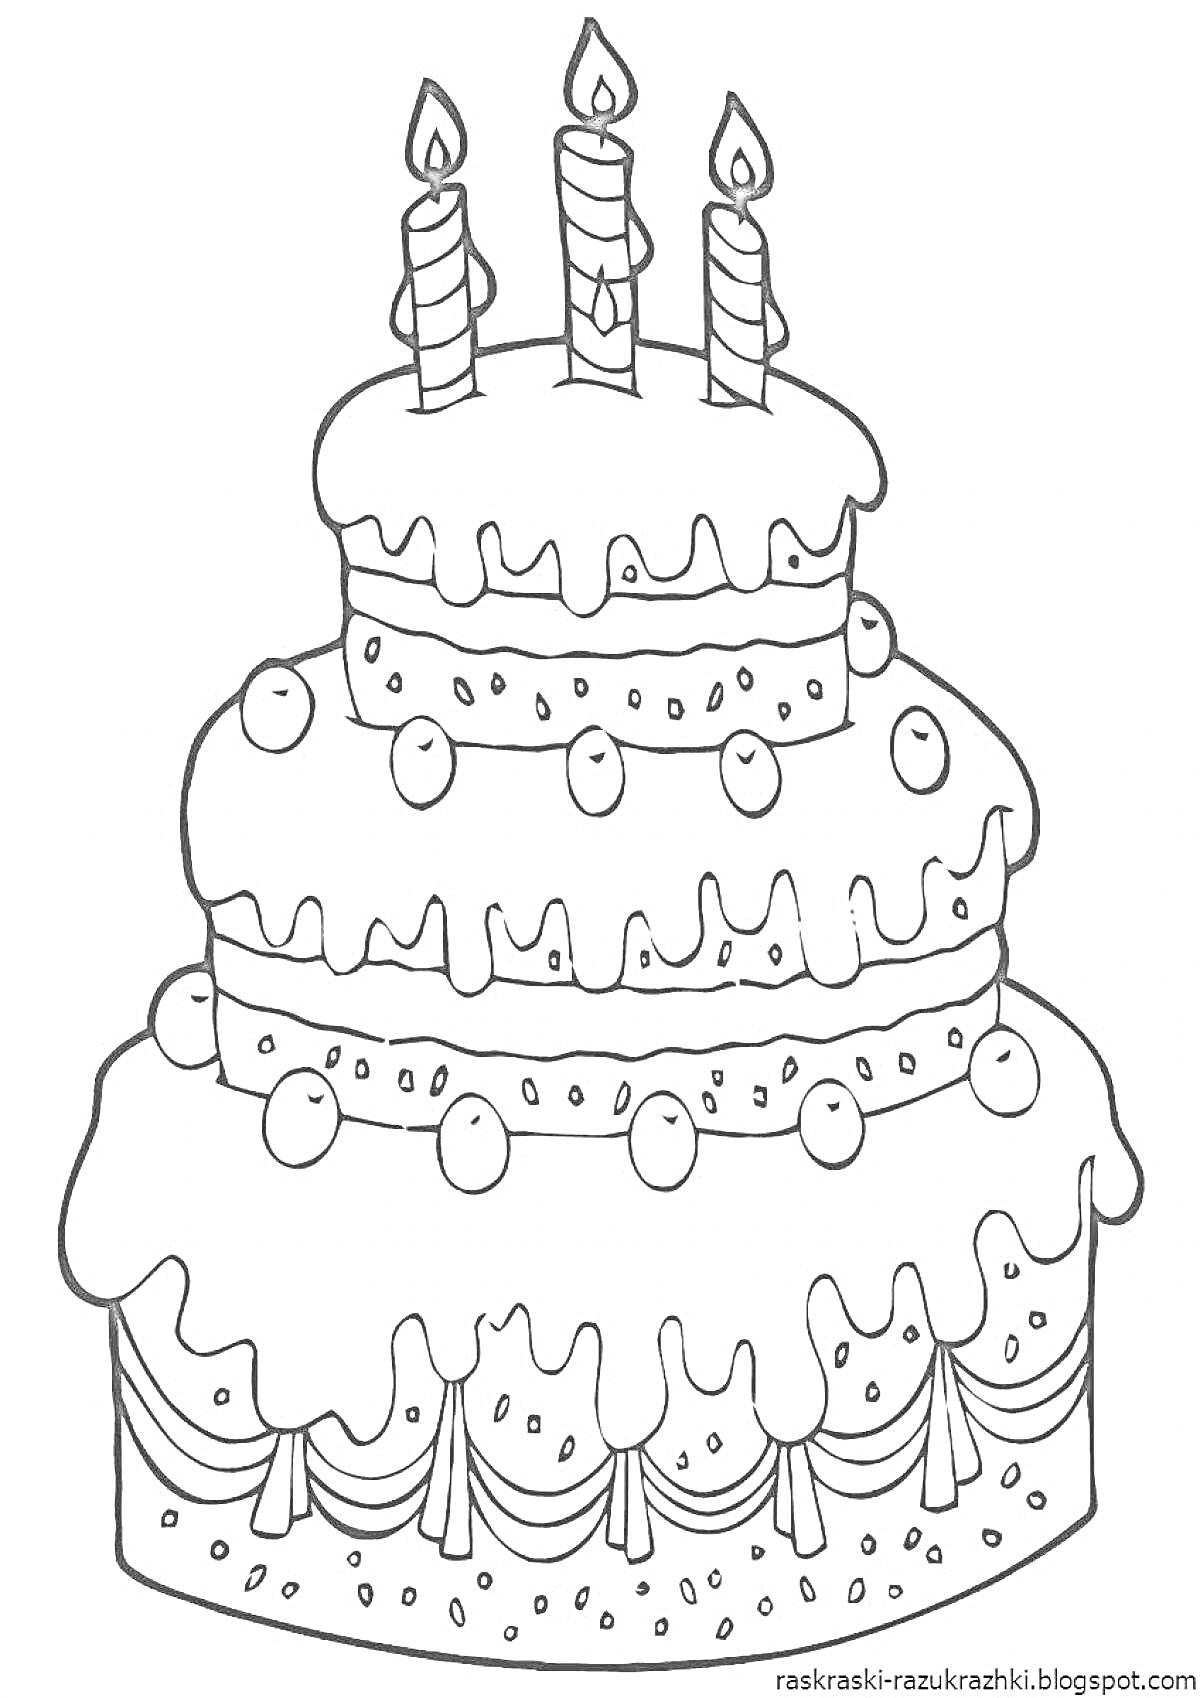 Раскраска Трёхъярусный торт с капельками глазури, круглым декором и тремя свечками на вершине